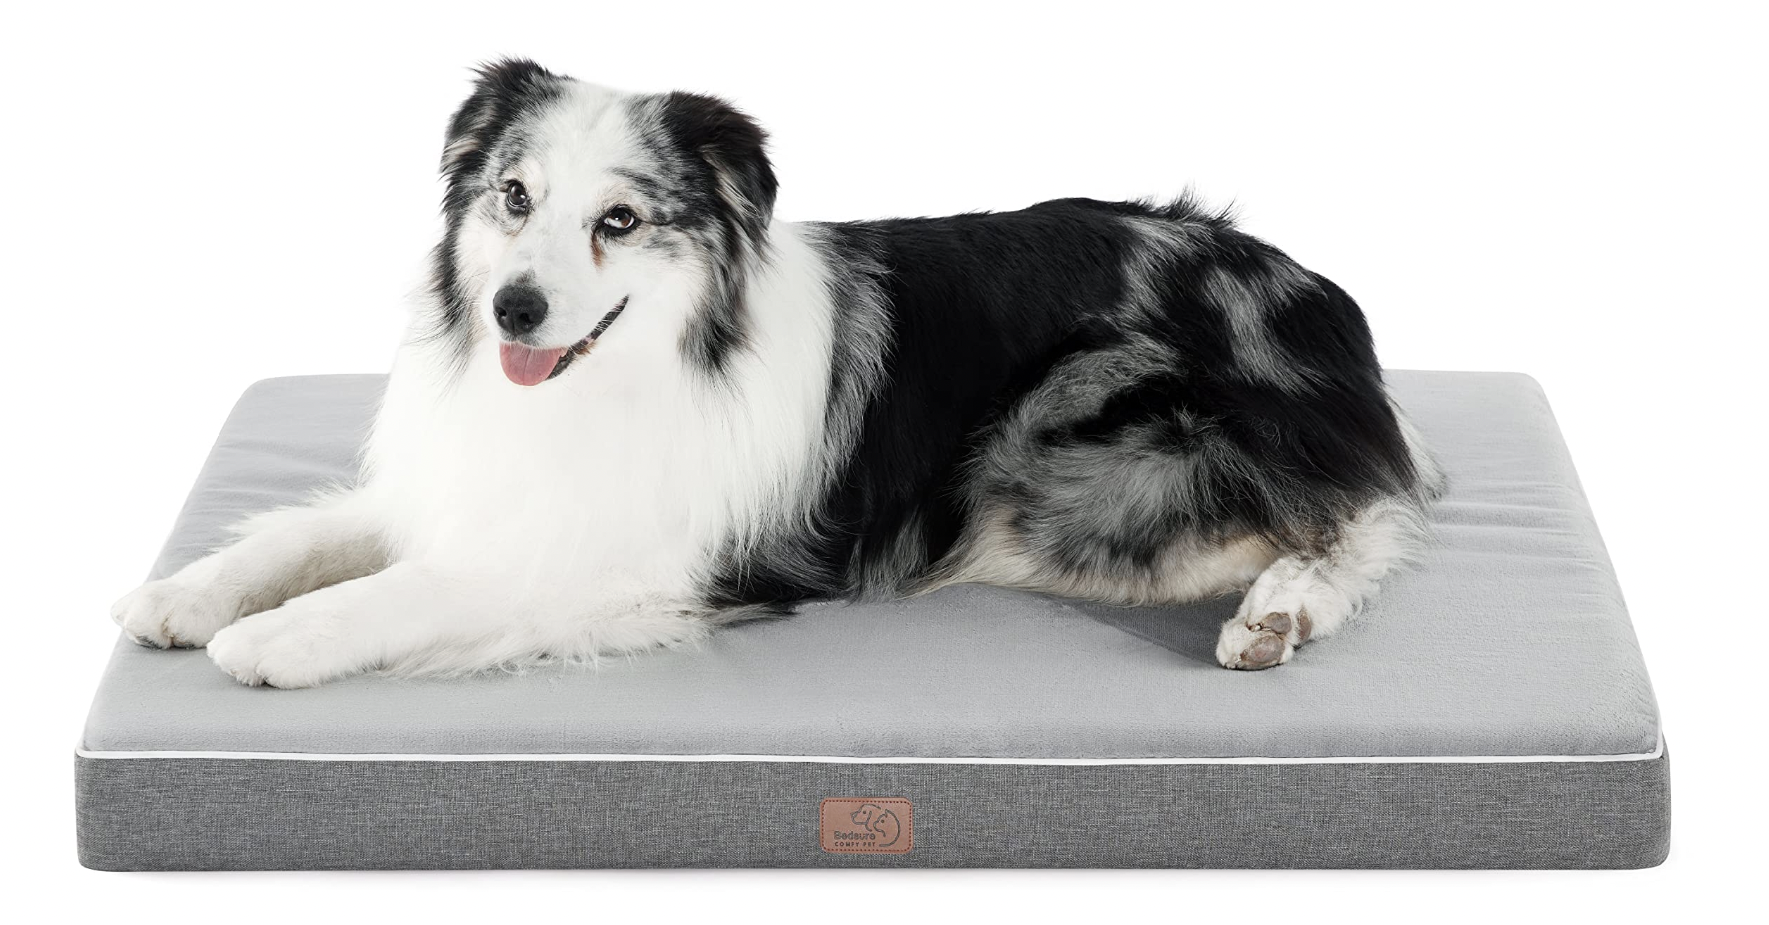 Bedsure Memory Foam Dog Bed - An Honest Review